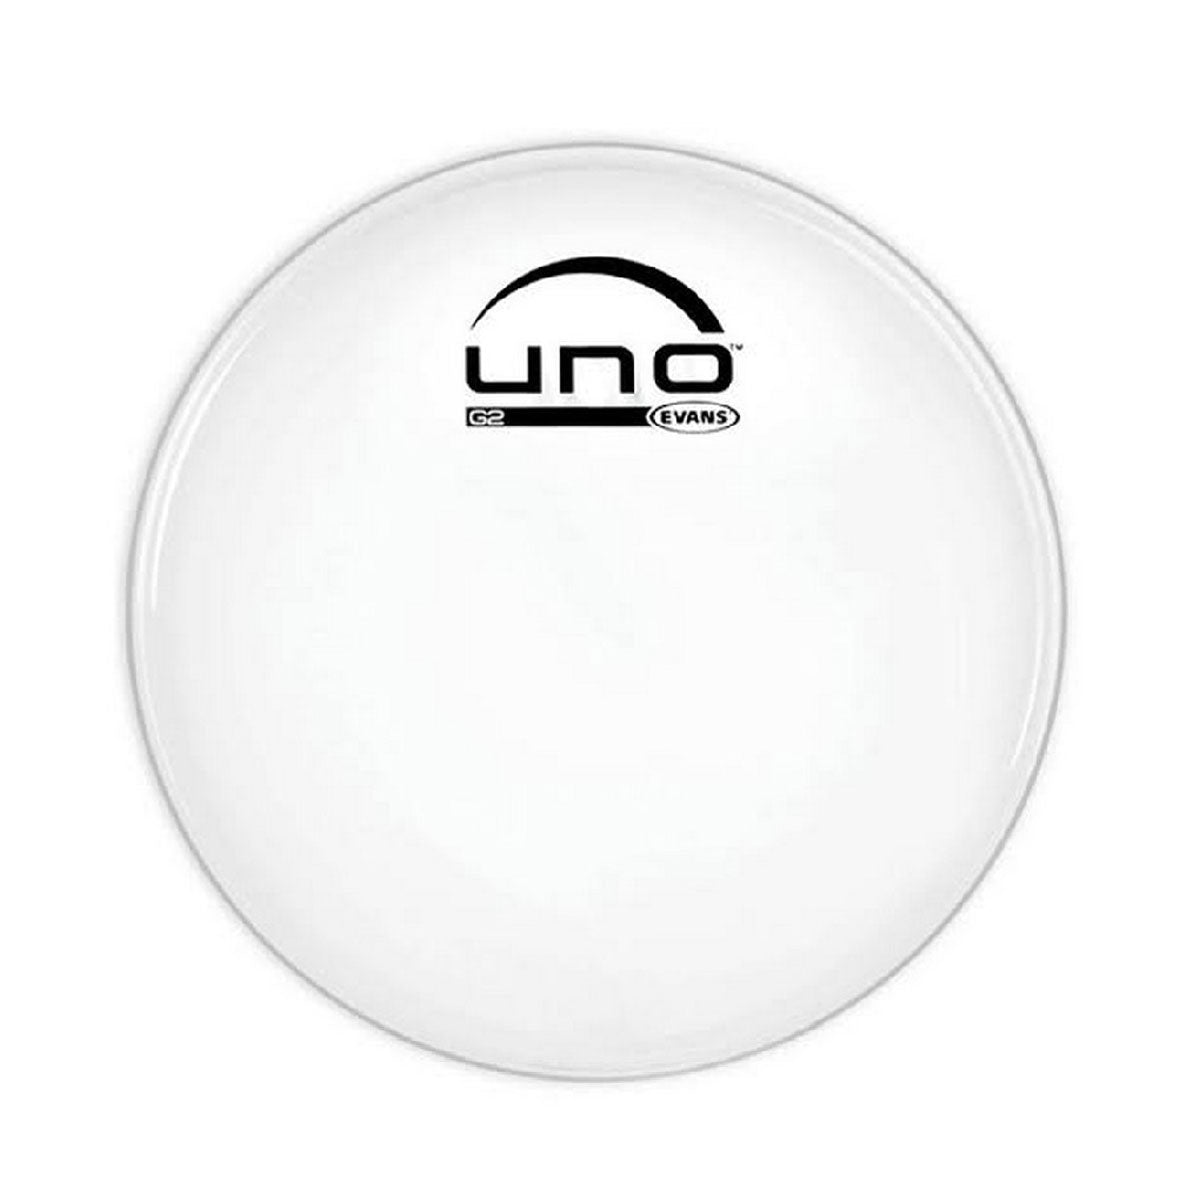 Evans Uno UB10G2 G2 Coated 10" Drumhead